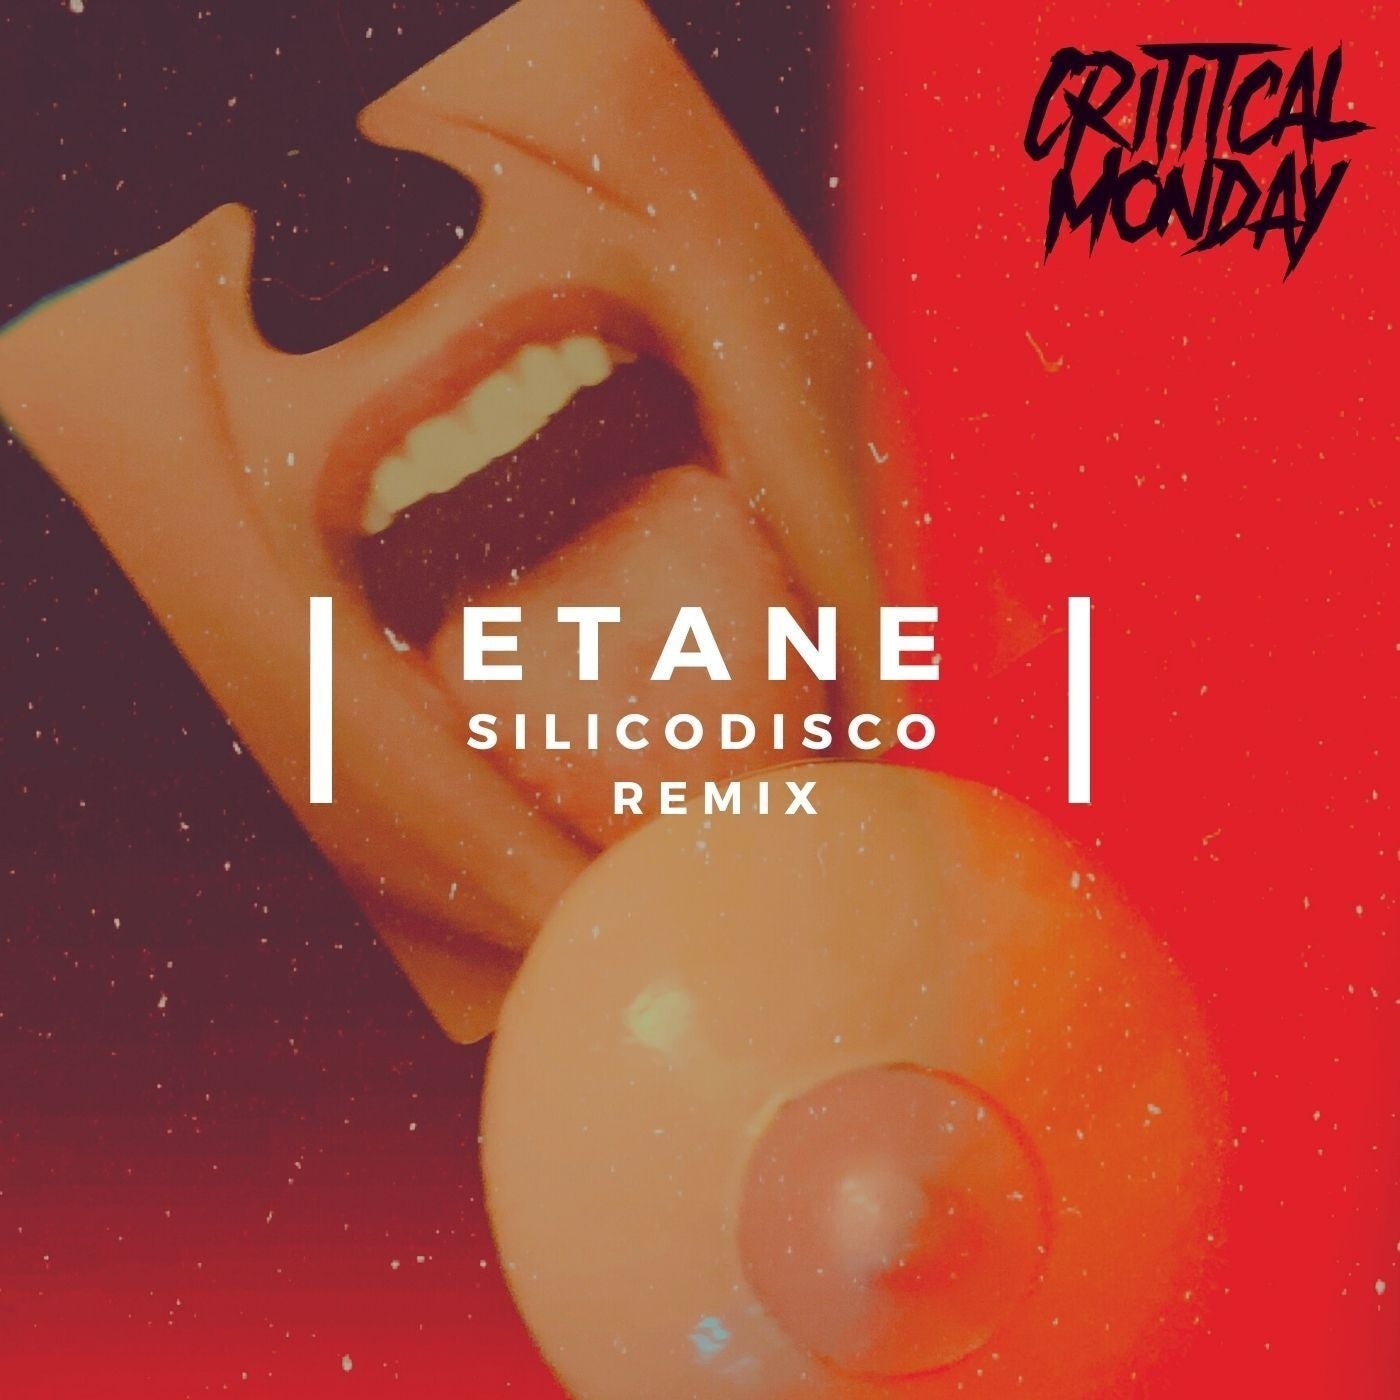 ETANE - Chapter 10 : Etane [CRITMON010]